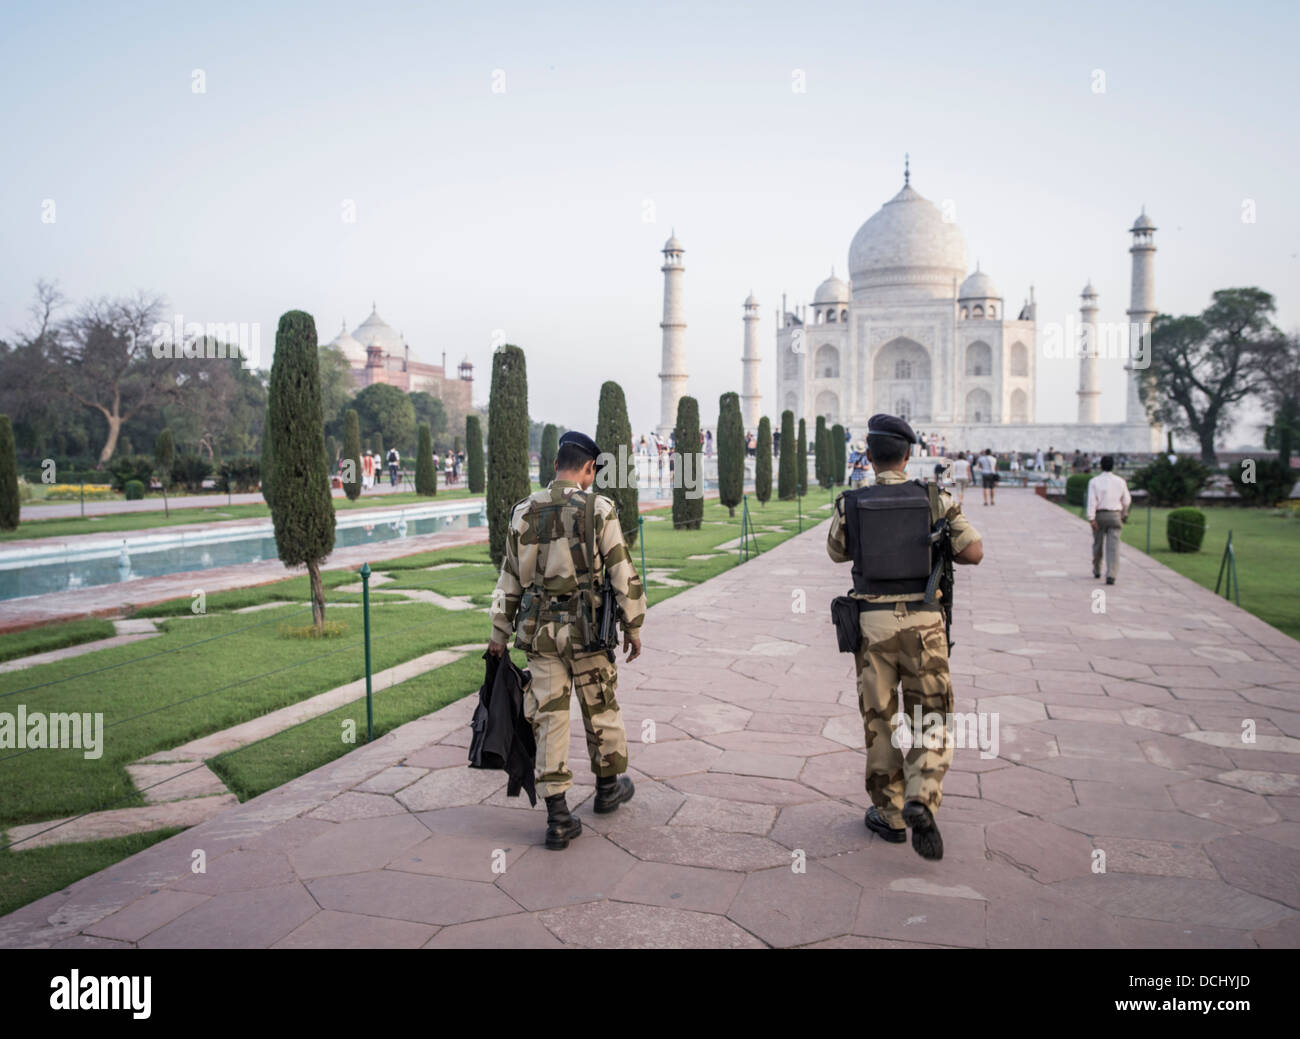 Taj Mahal bianco mausoleo di marmo - Agra, India un Sito Patrimonio Mondiale dell'UNESCO Foto Stock